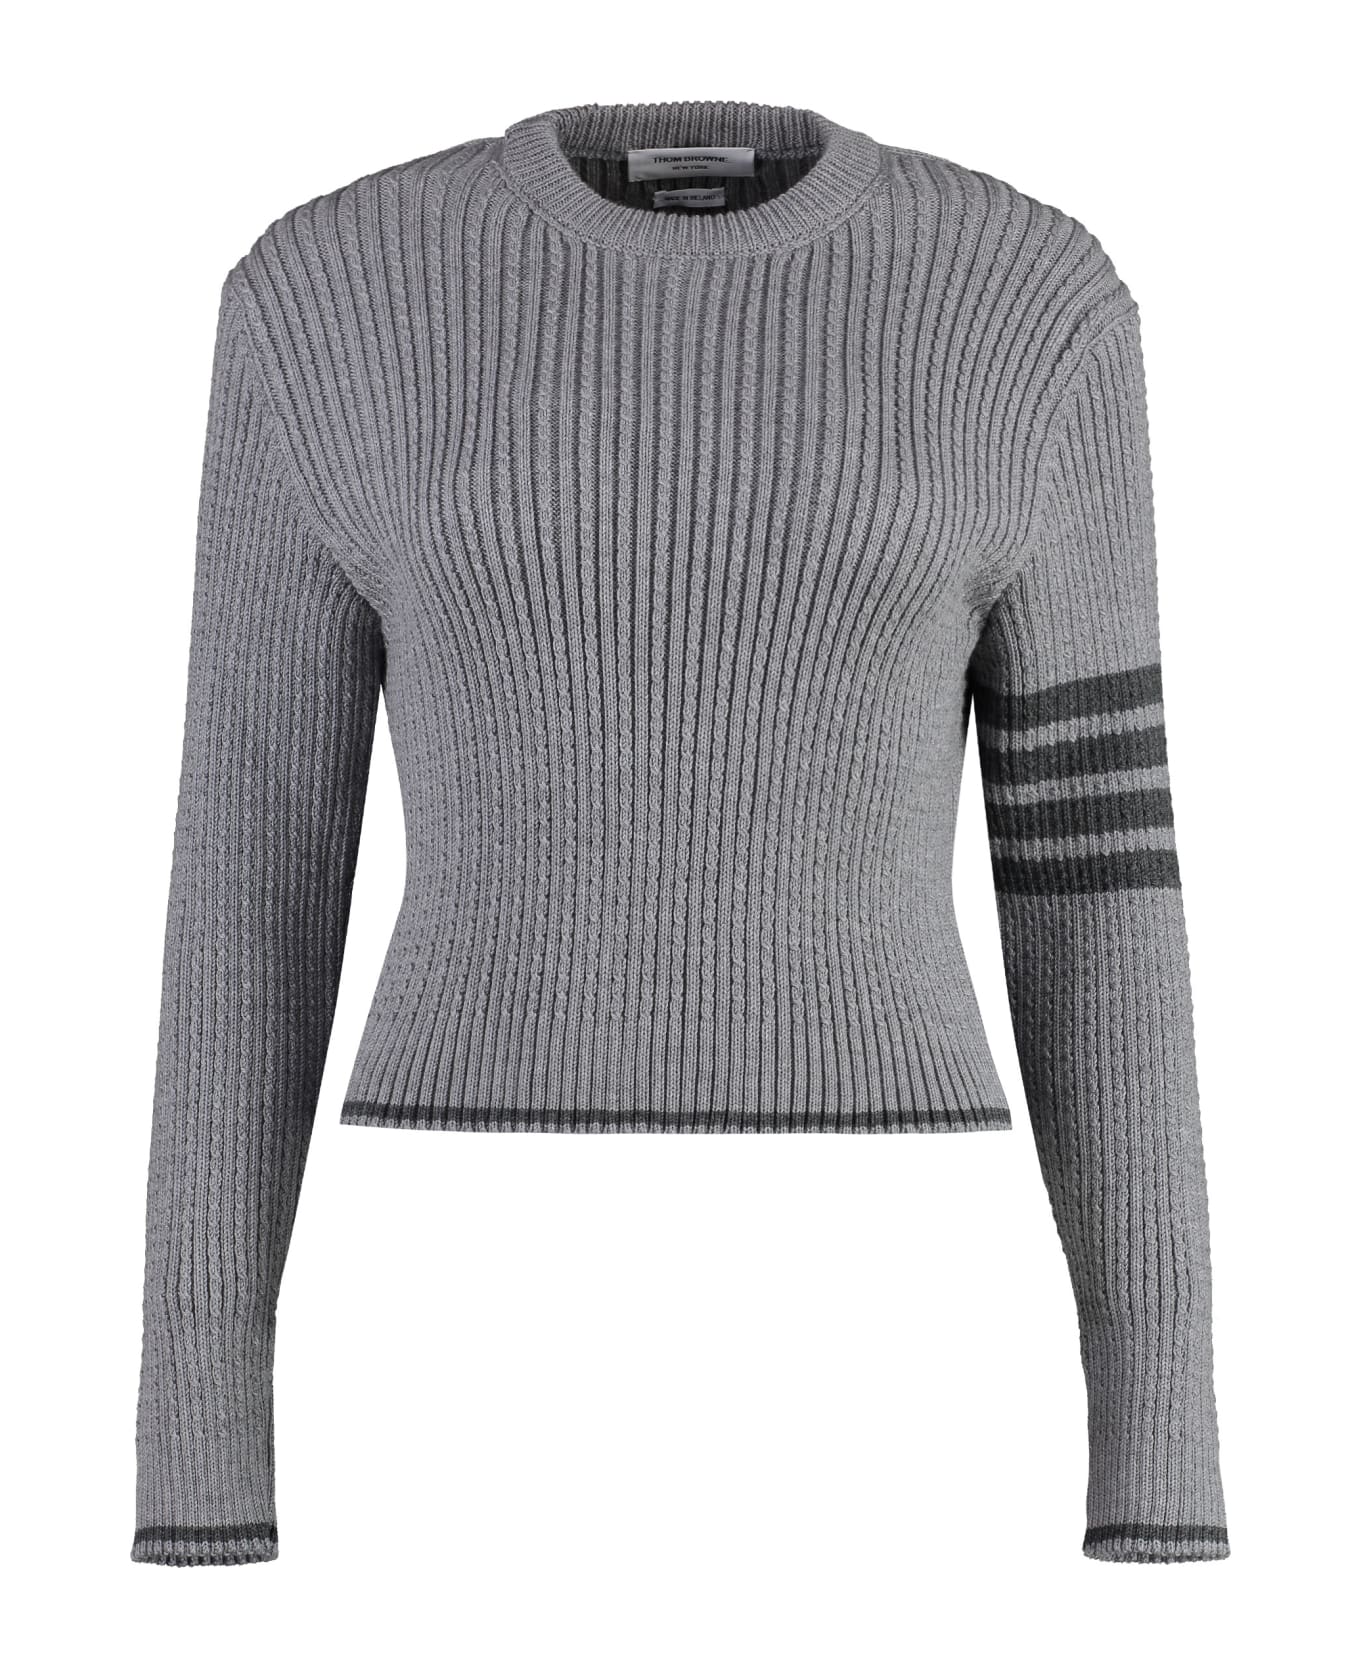 Thom Browne Virgin Wool Sweater - grey